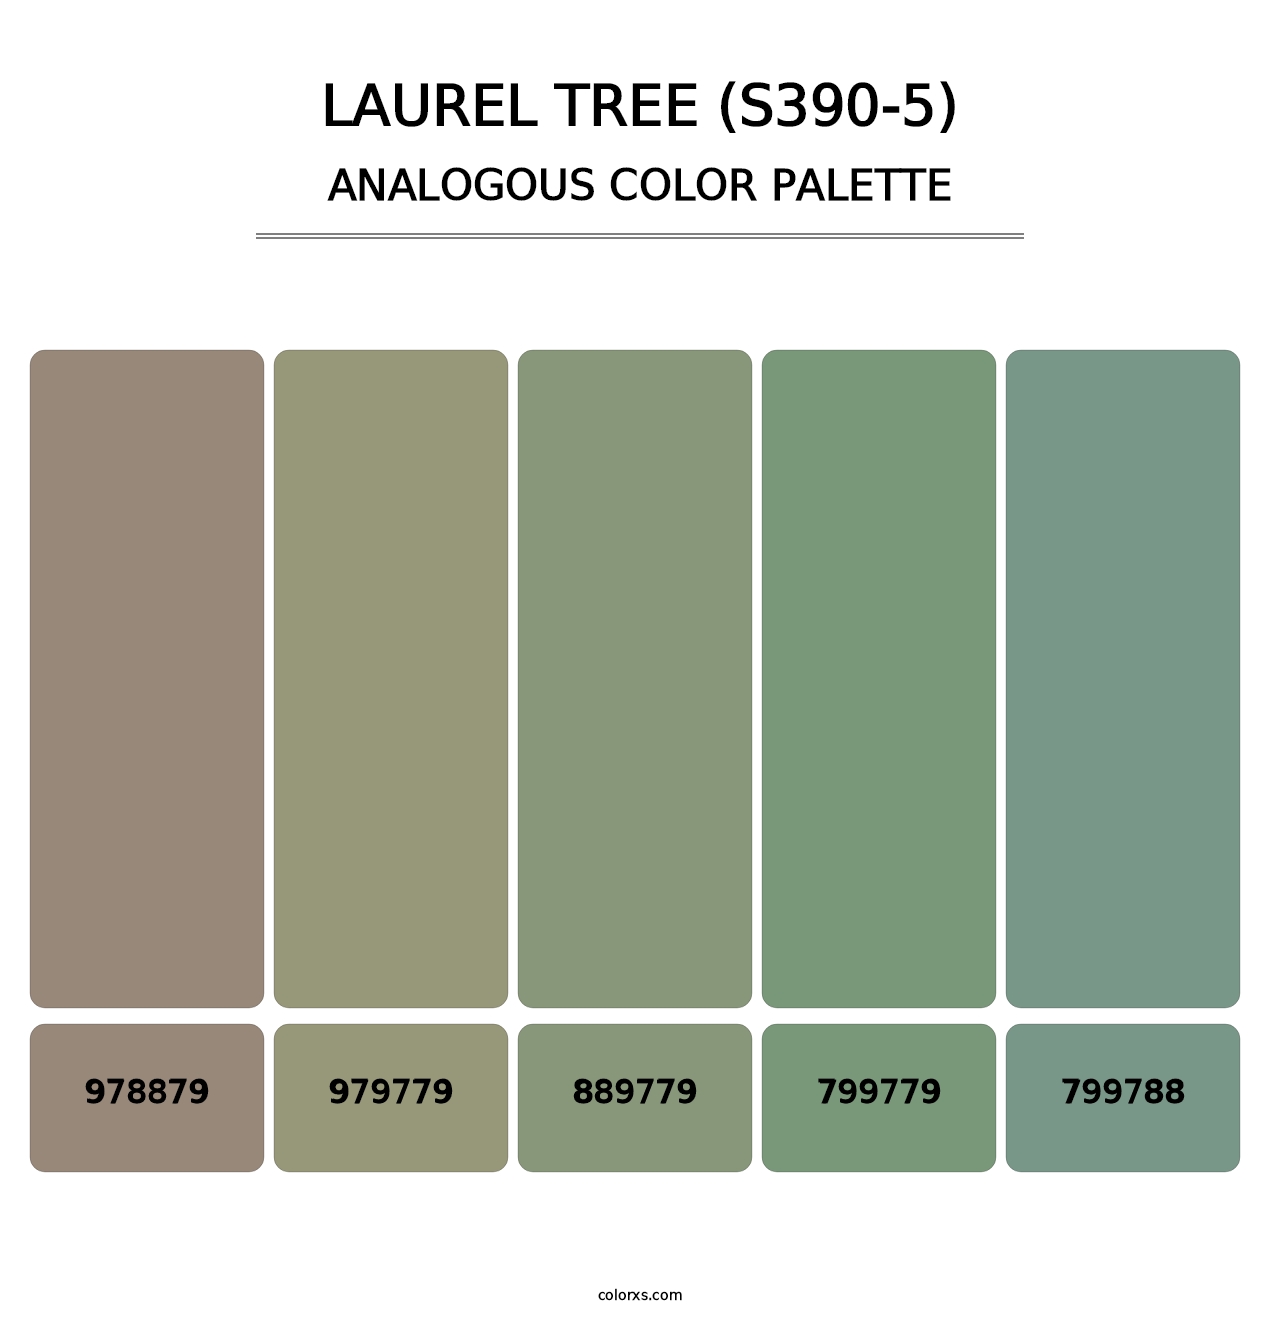 Laurel Tree (S390-5) - Analogous Color Palette